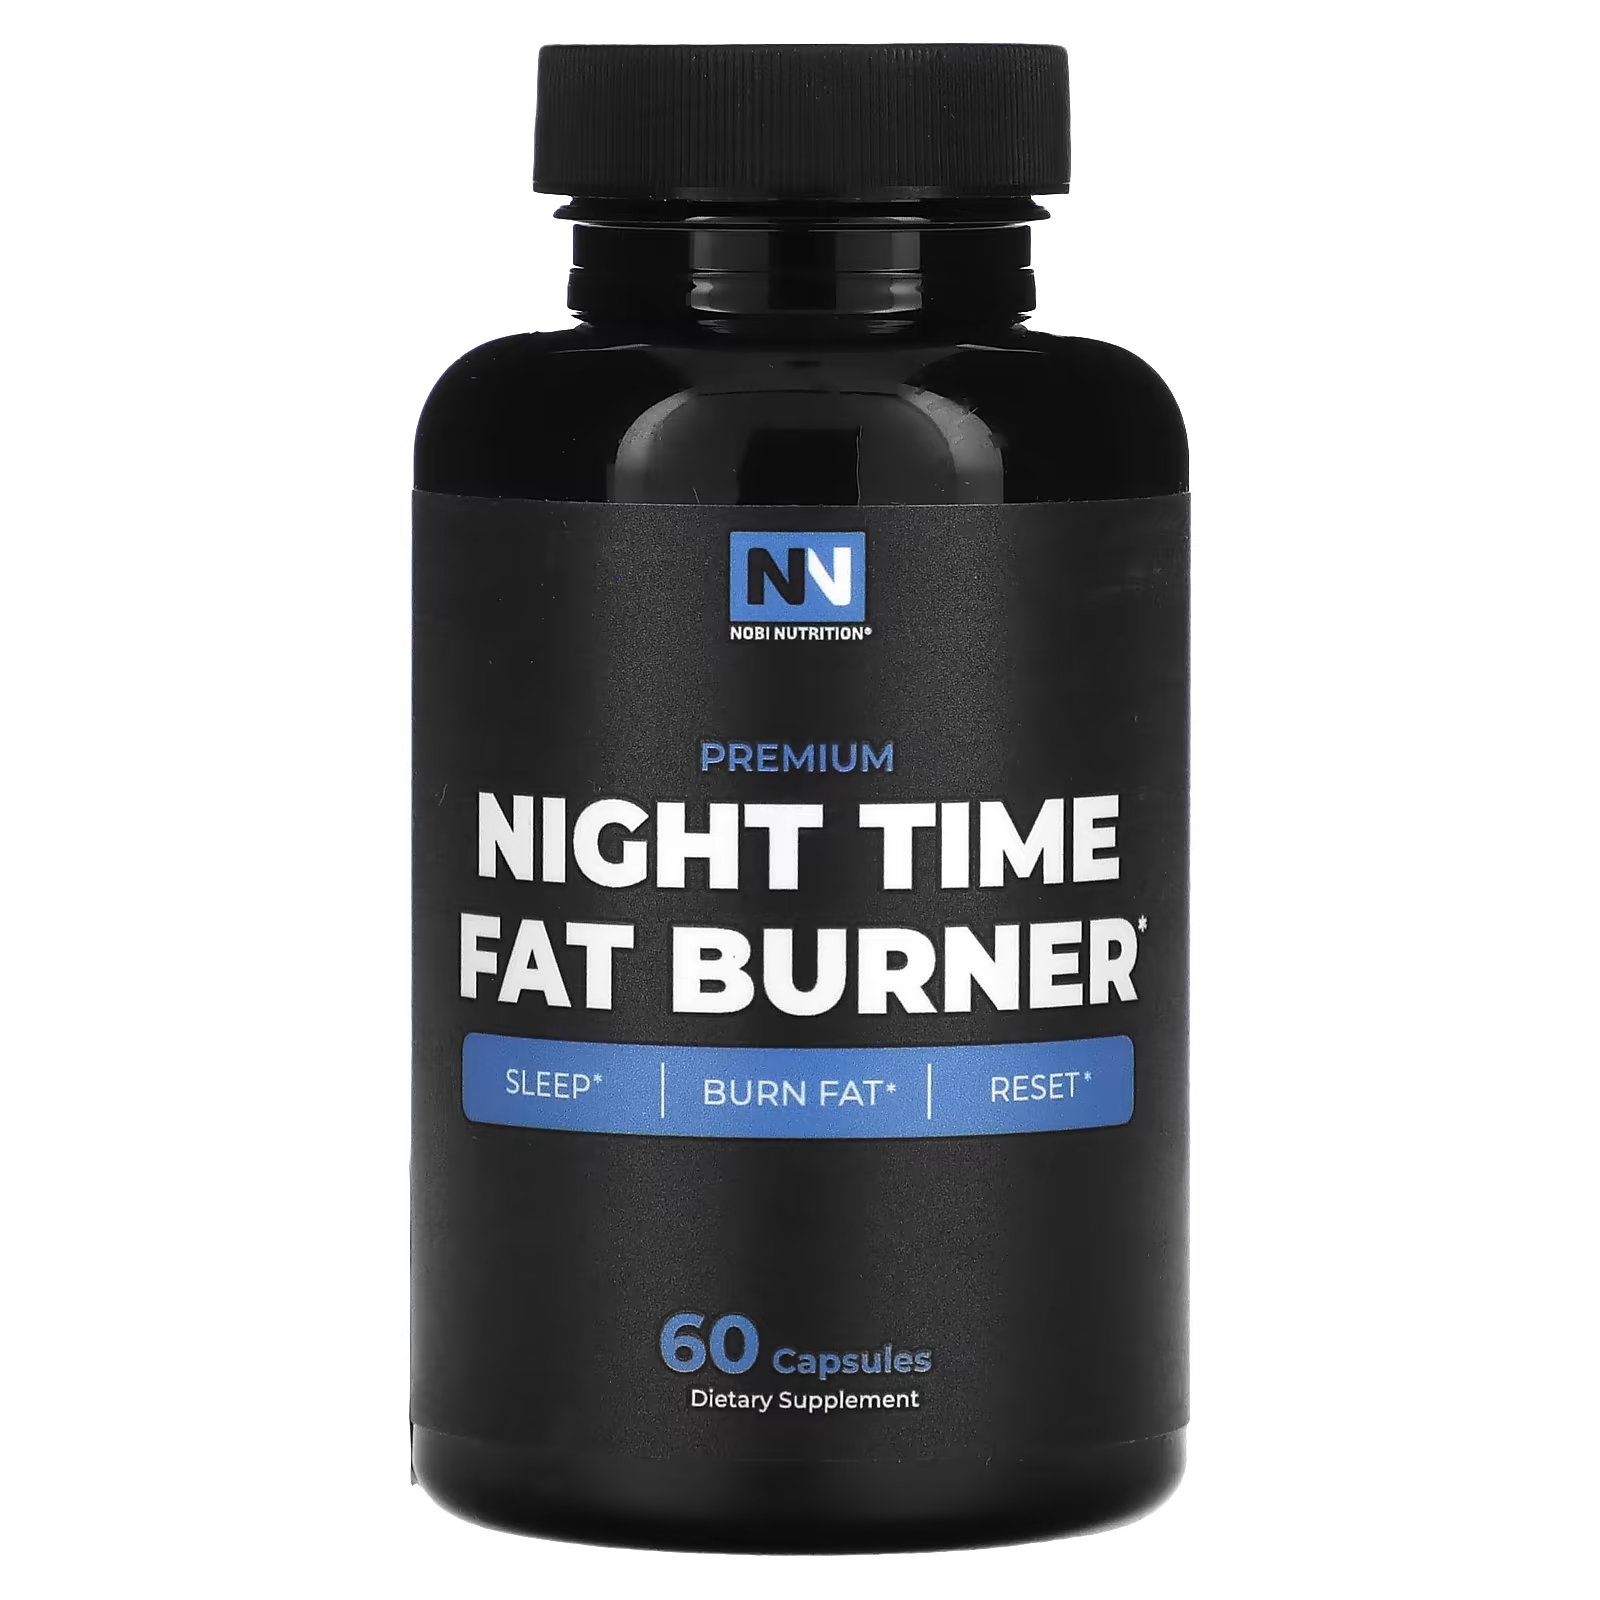 Nobi Nutrition Премиум средство для сжигания жира в ночное время, 60 капсул